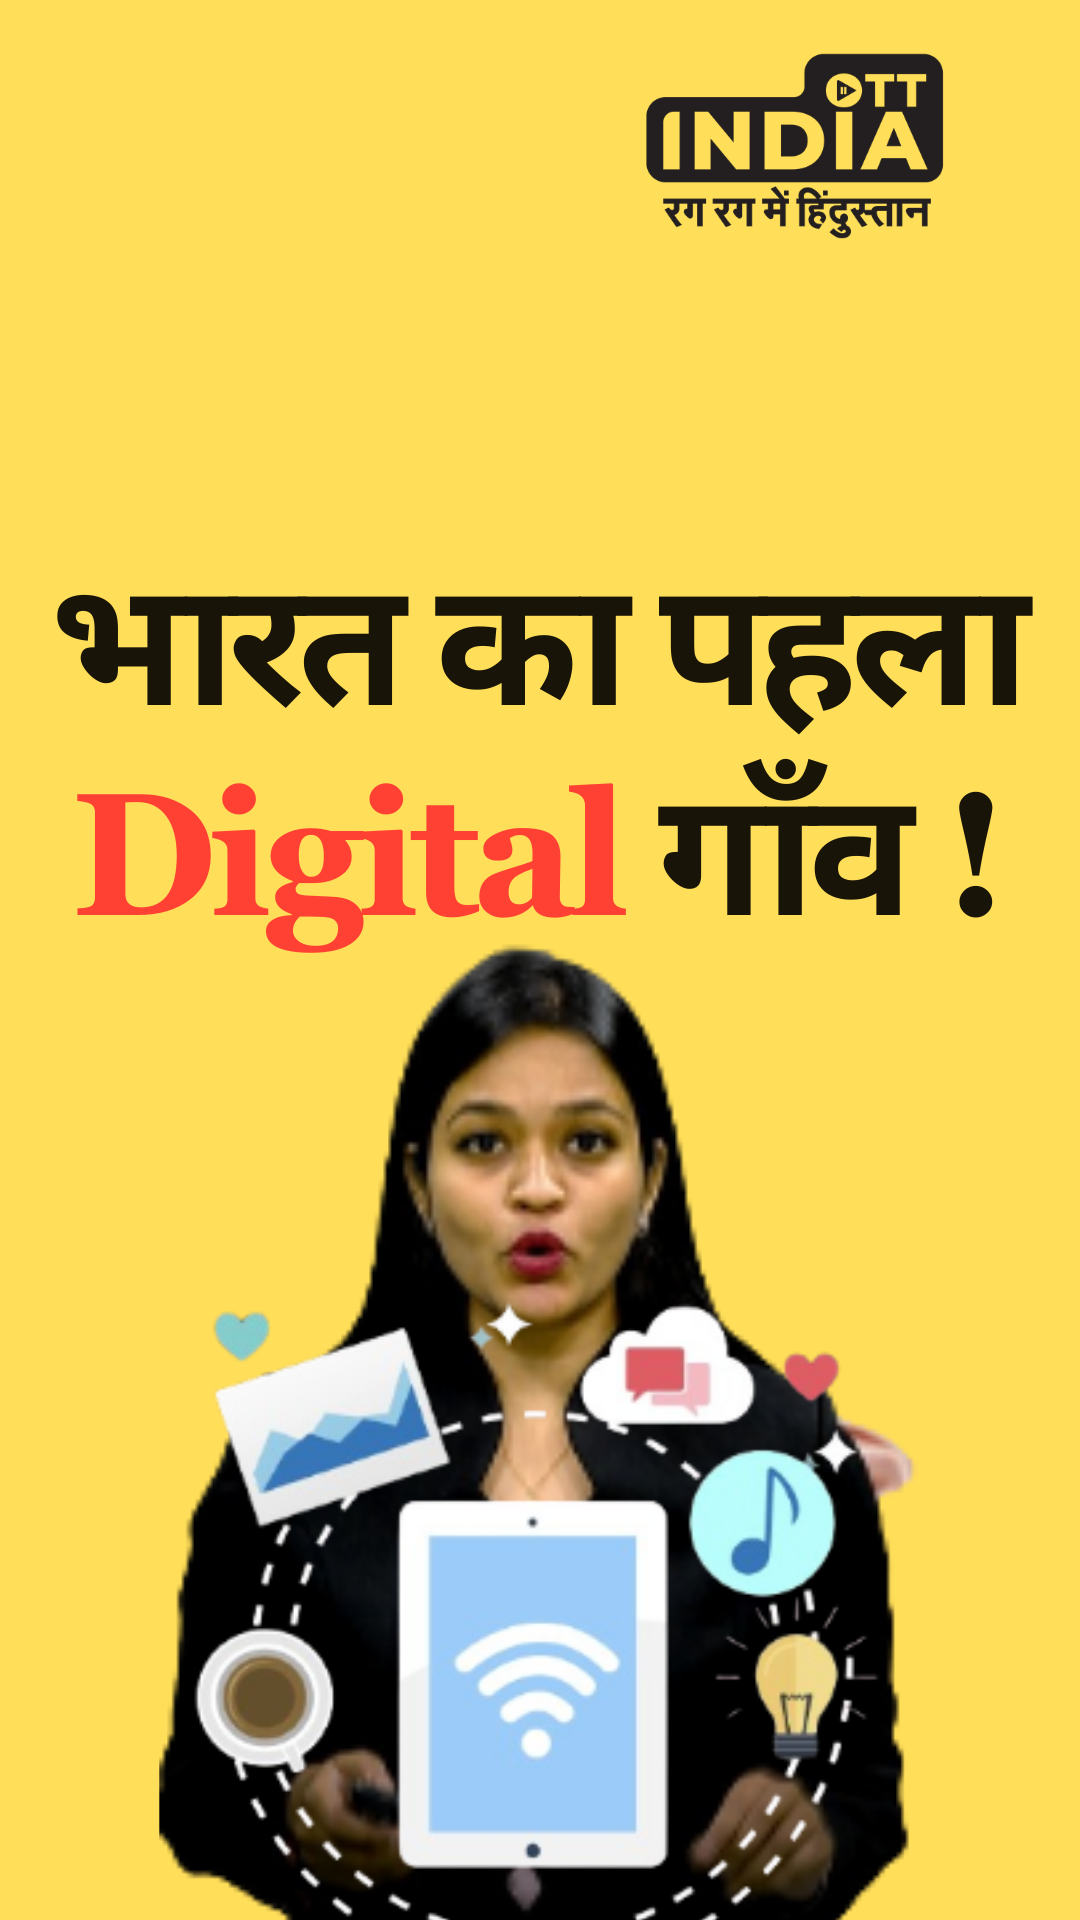 यह है भारत का पहला Digital Village!